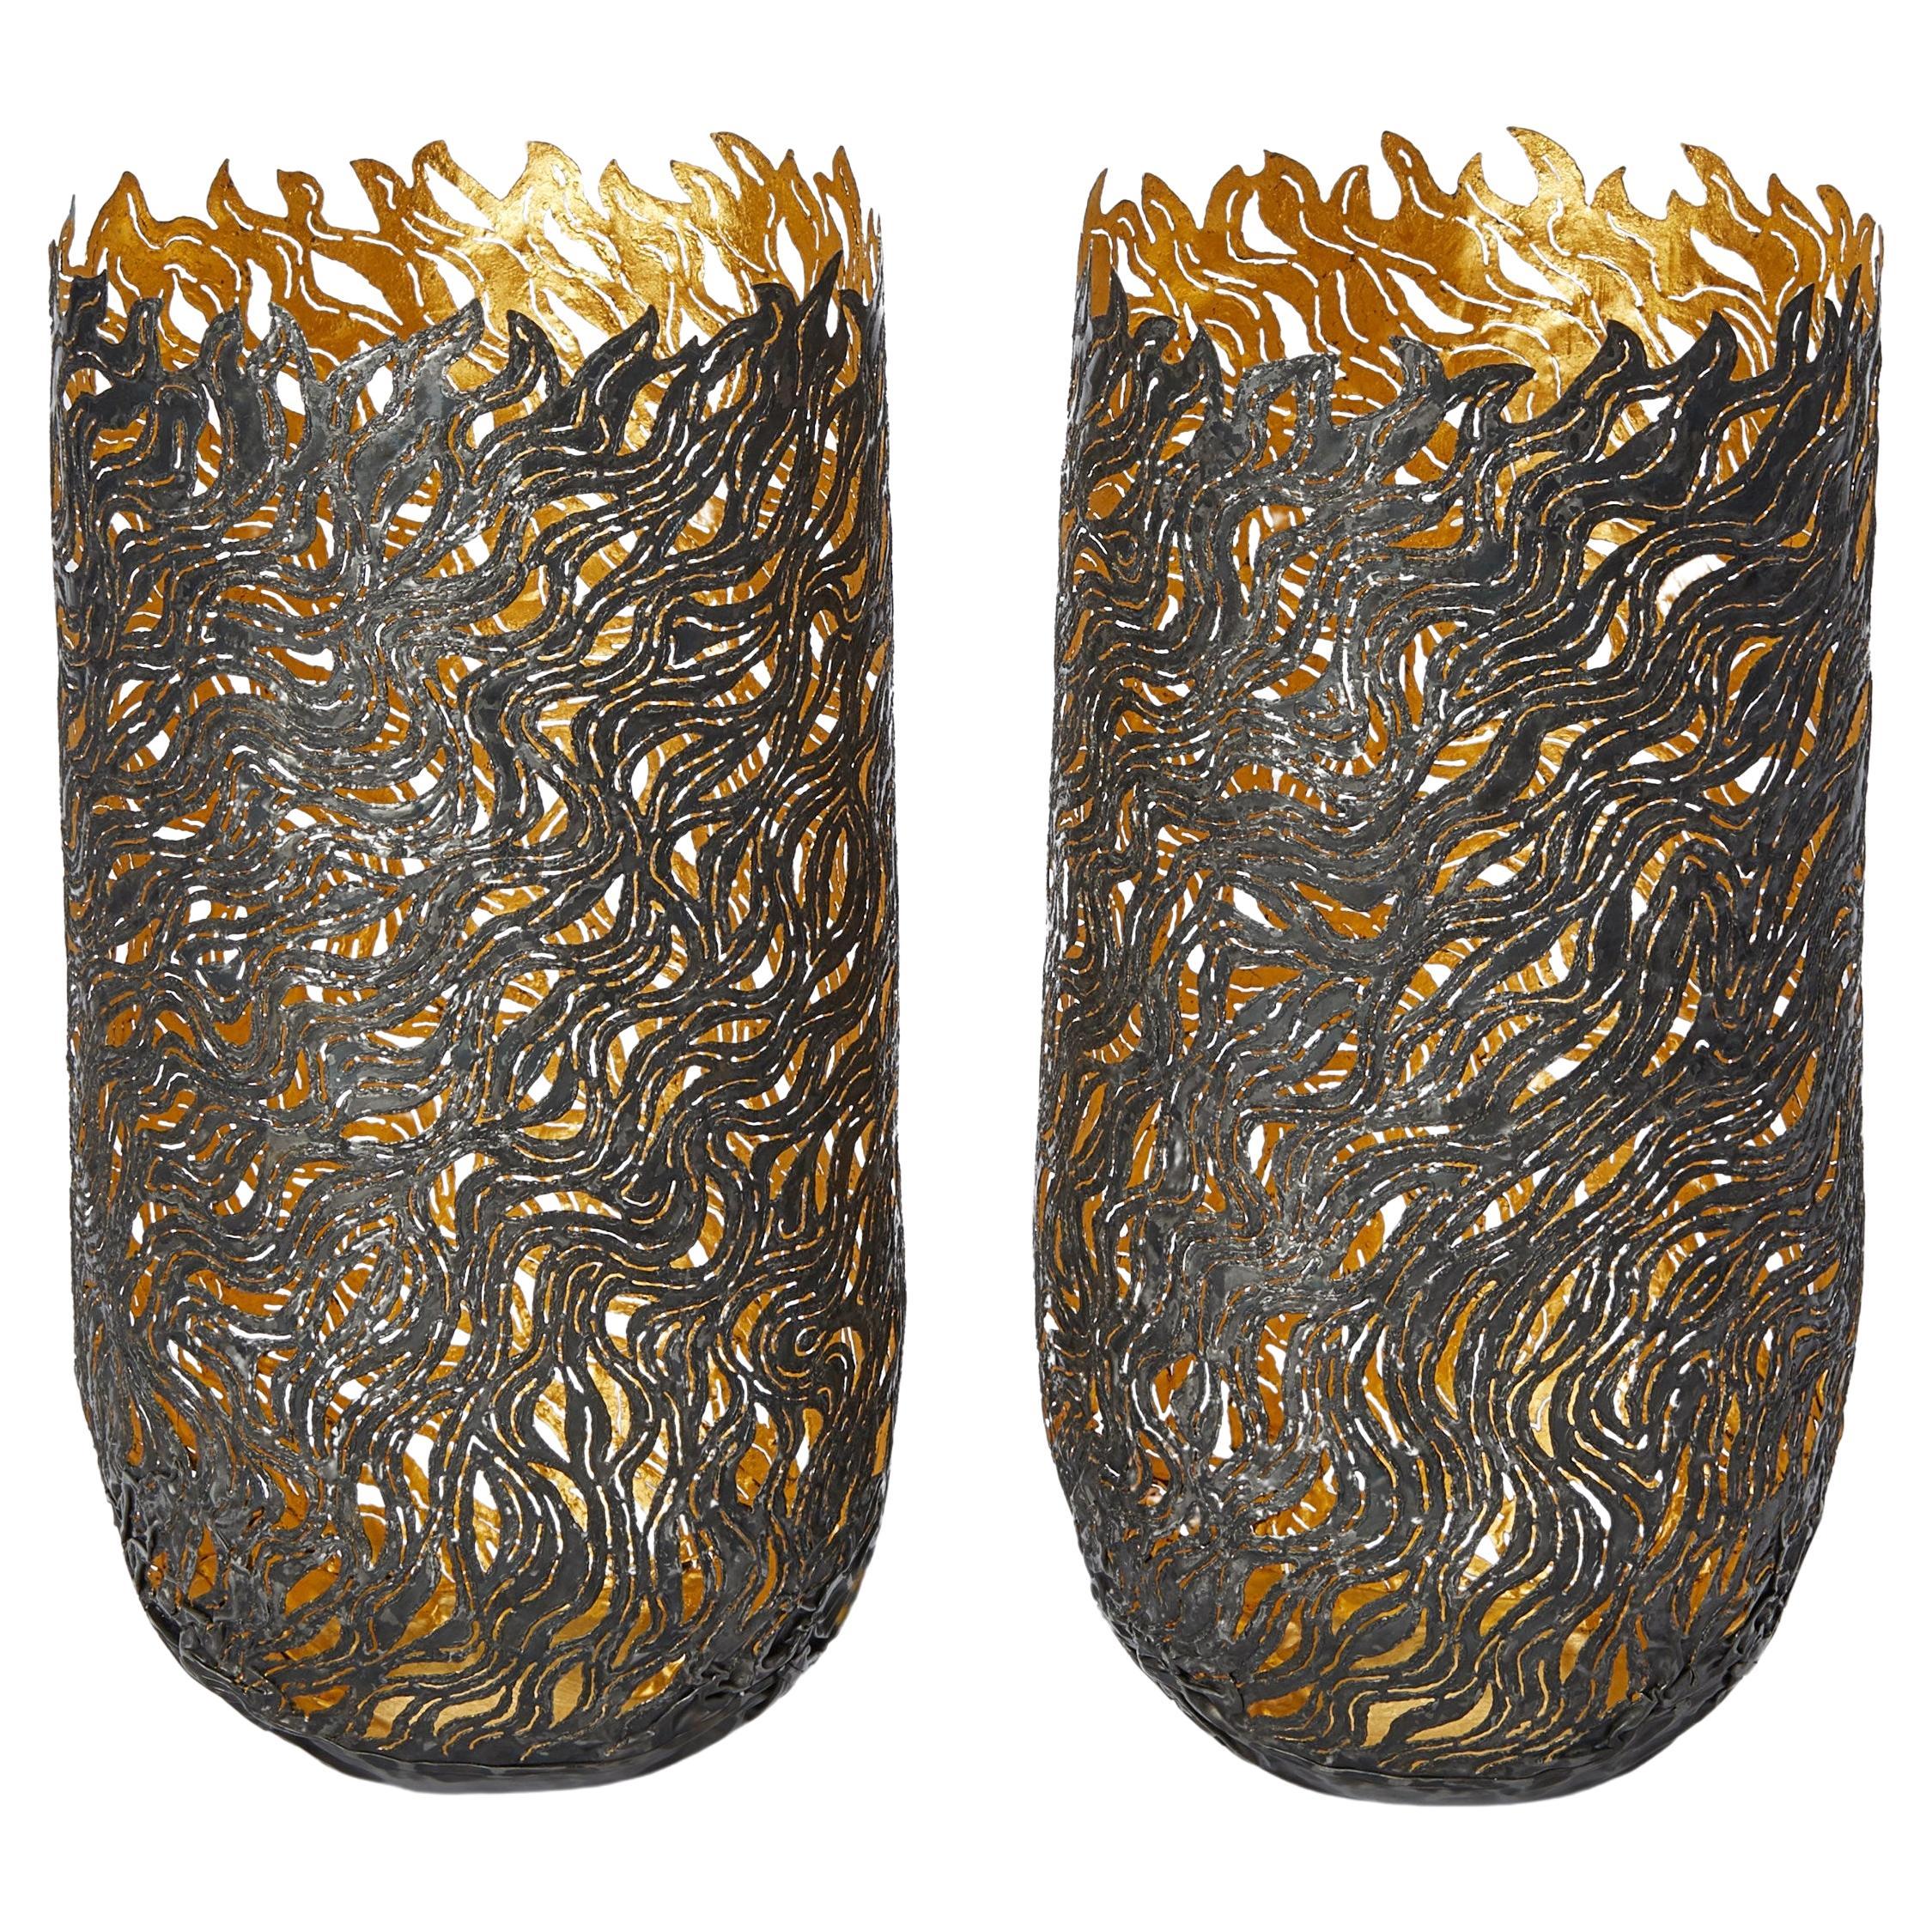  Vases de danse d'automne, récipients en acier texturé organique et or de Claire Malet